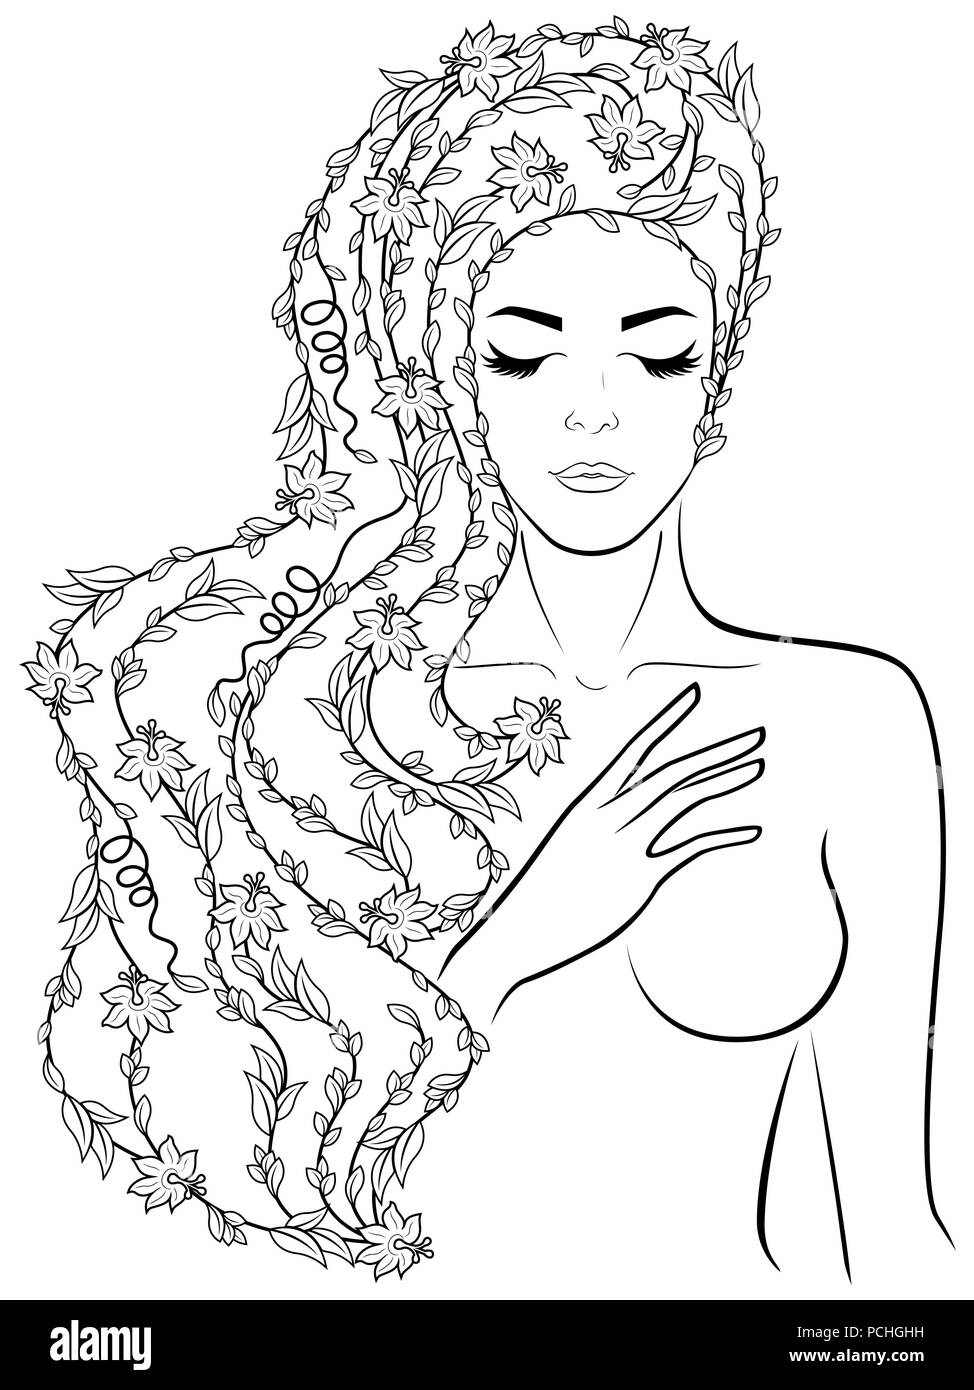 Schwarze Kontur von super hübsche Mädchen mit Blumen in den luxuriösen gewelltes Haar auf dem weißen Hintergrund, von Hand zeichnen Vektor Stock Vektor